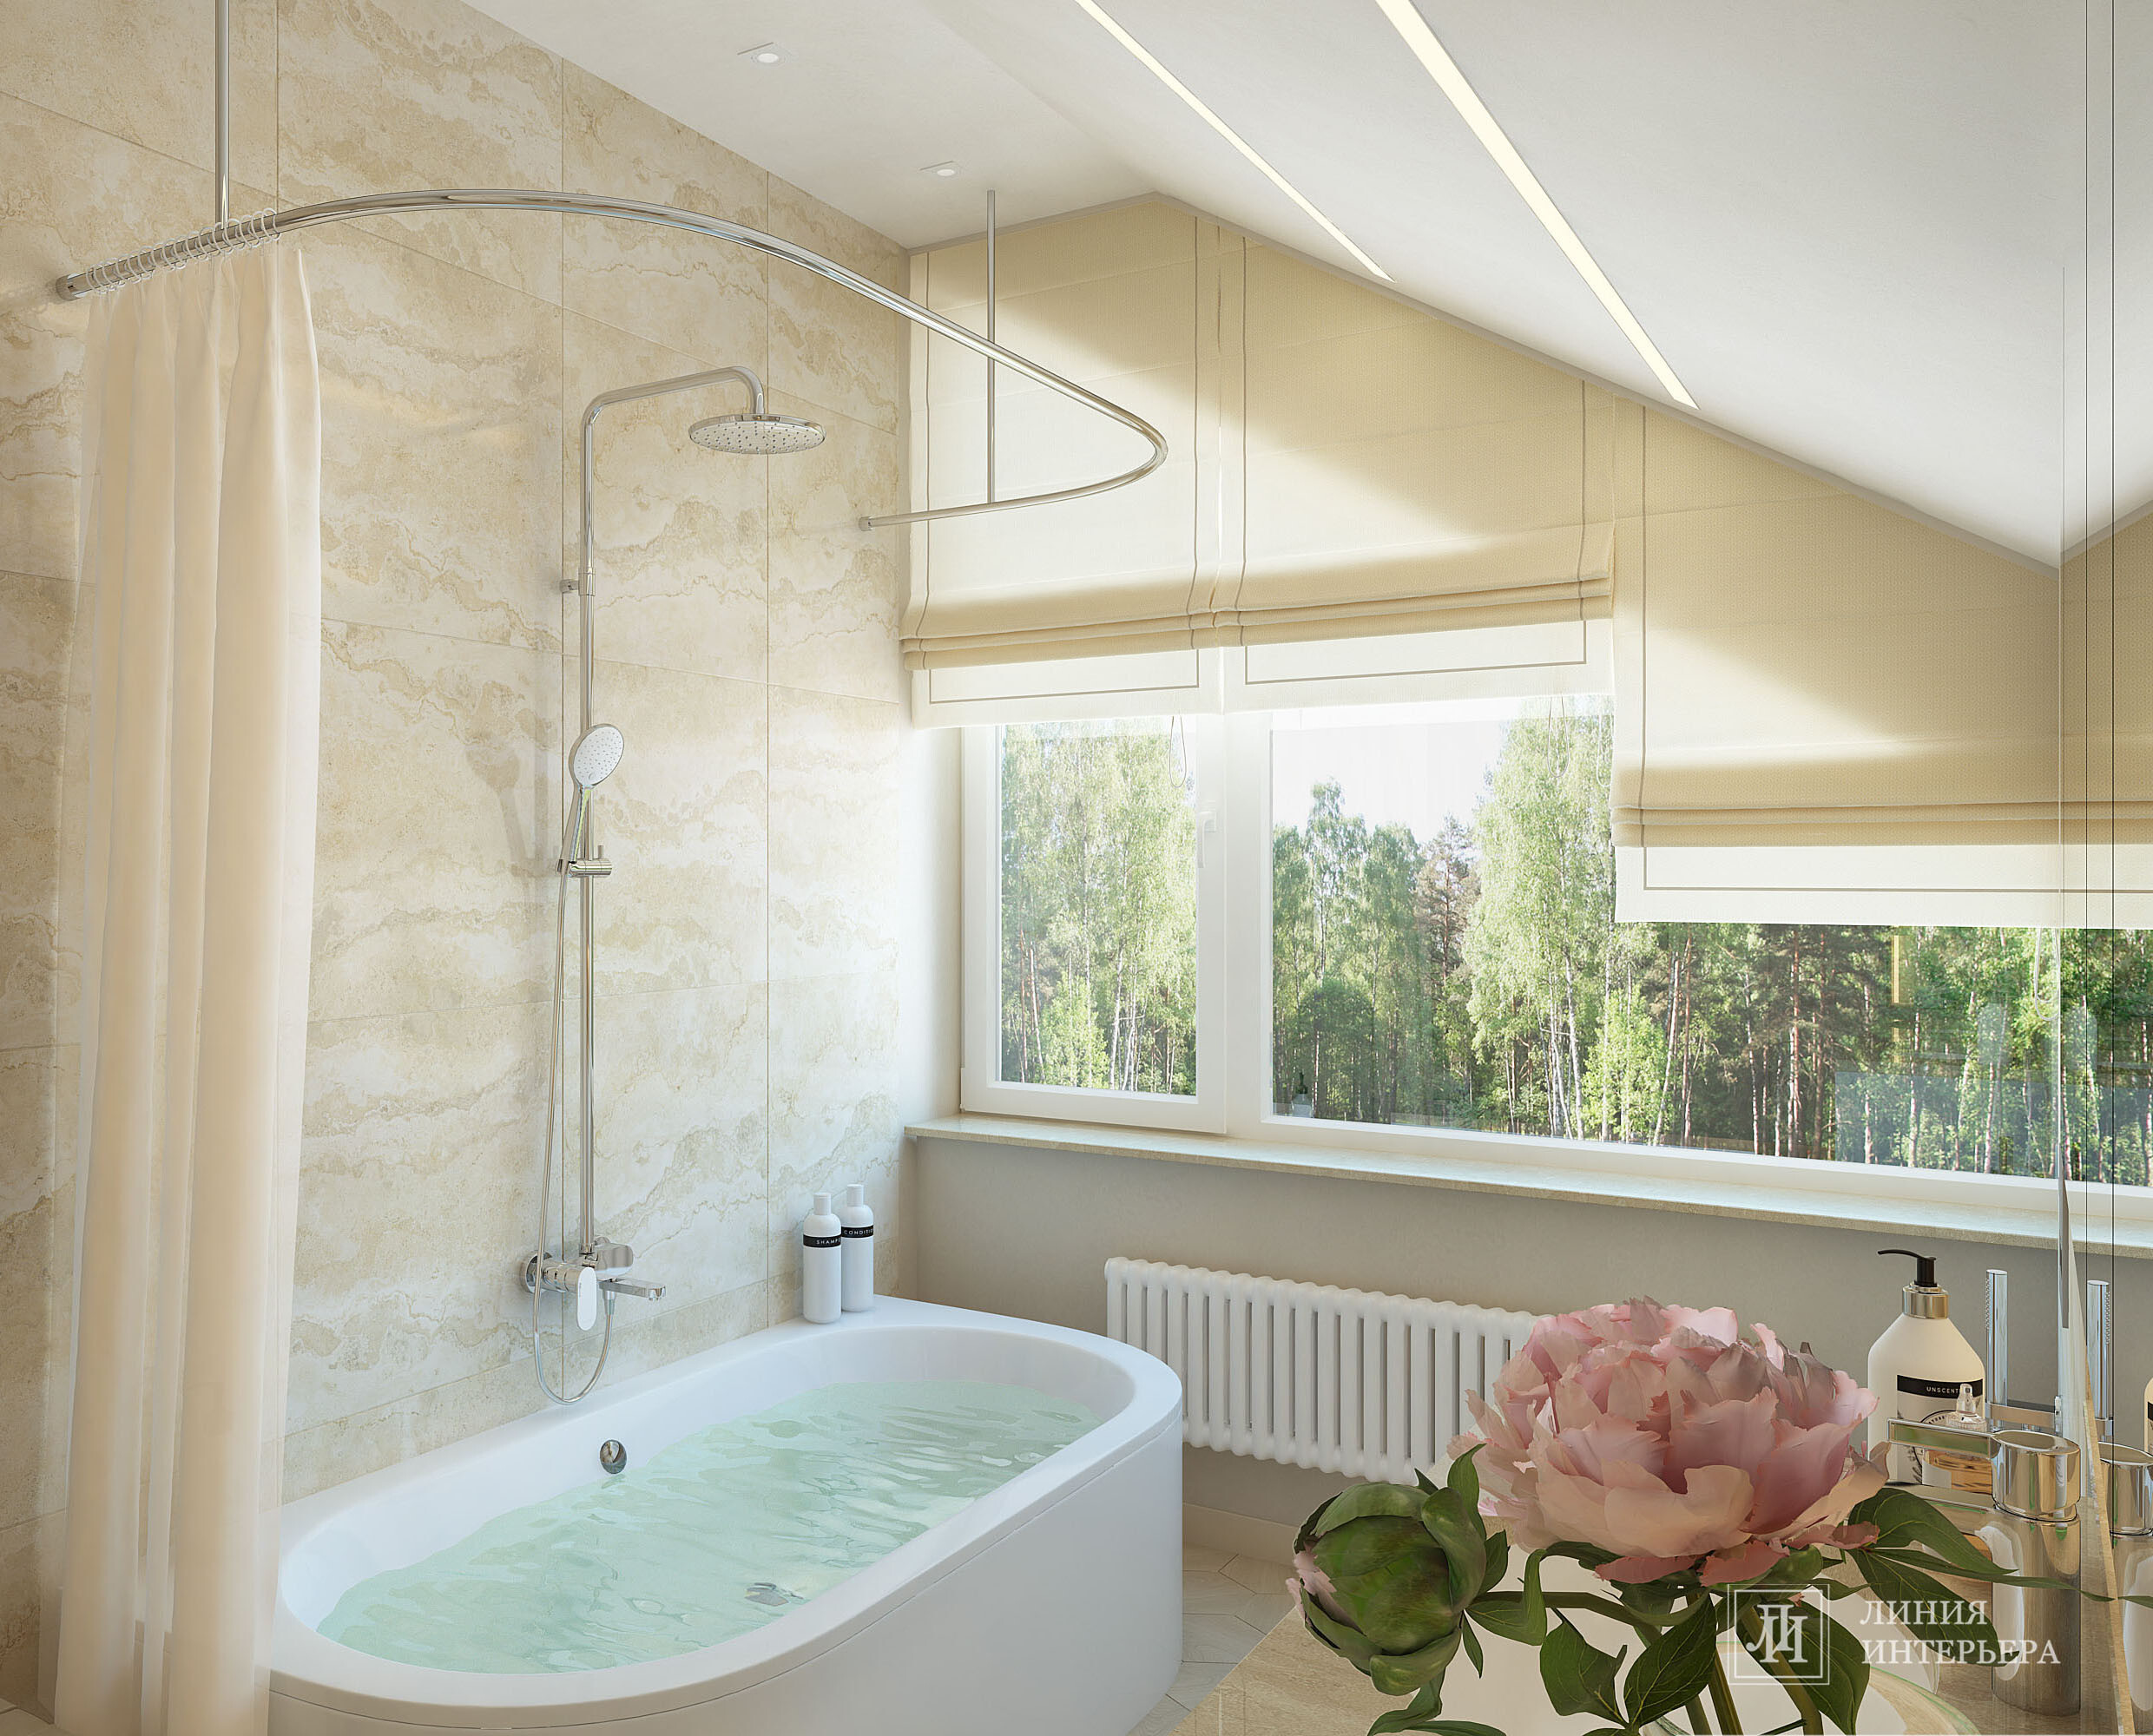 Интерьер ванной с жалюзи и вертикальными жалюзи в современном стиле